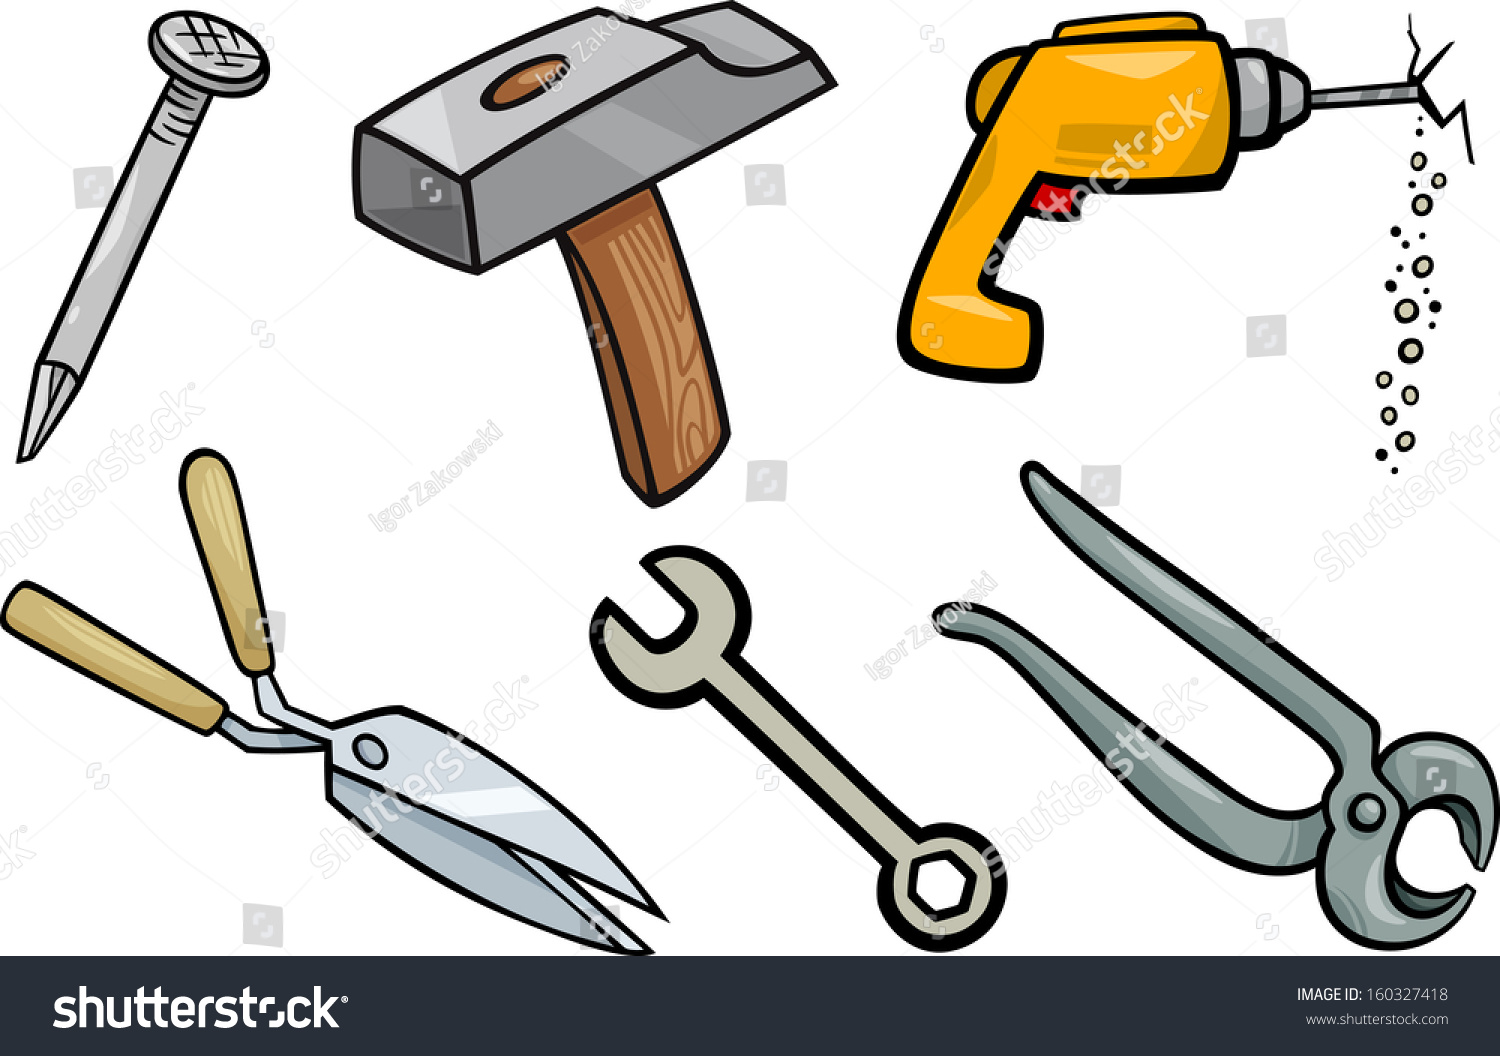 clipart carpenter tools - photo #17